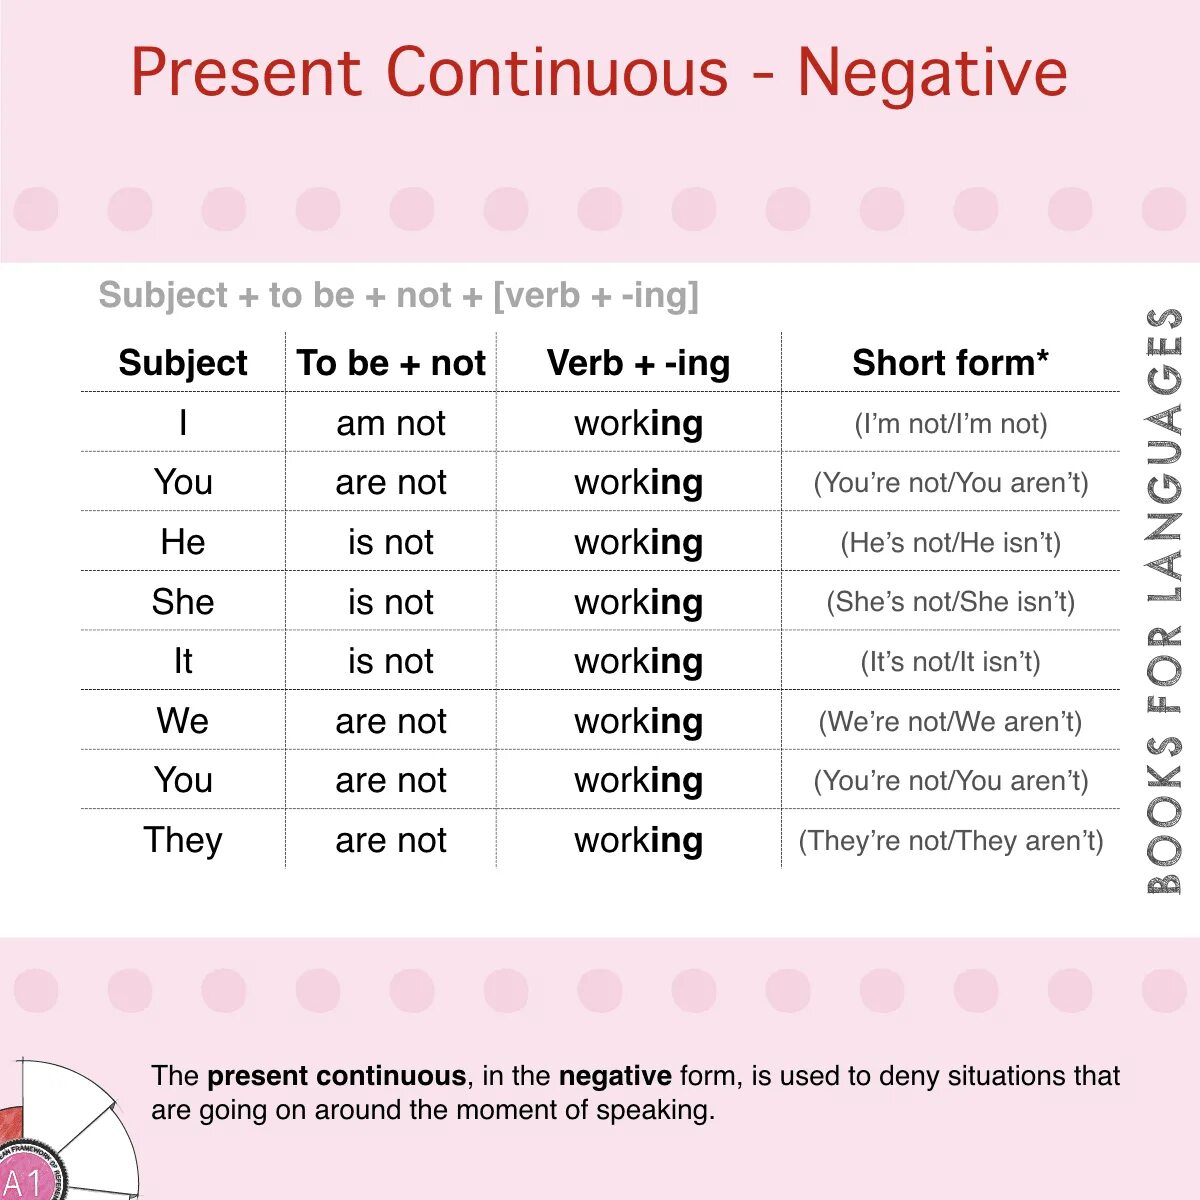 Present continuous вспомогательные слова. Презент континиус. Present Continuous negative. Отрицательная форма present Continuous. Презент континиус негатив.